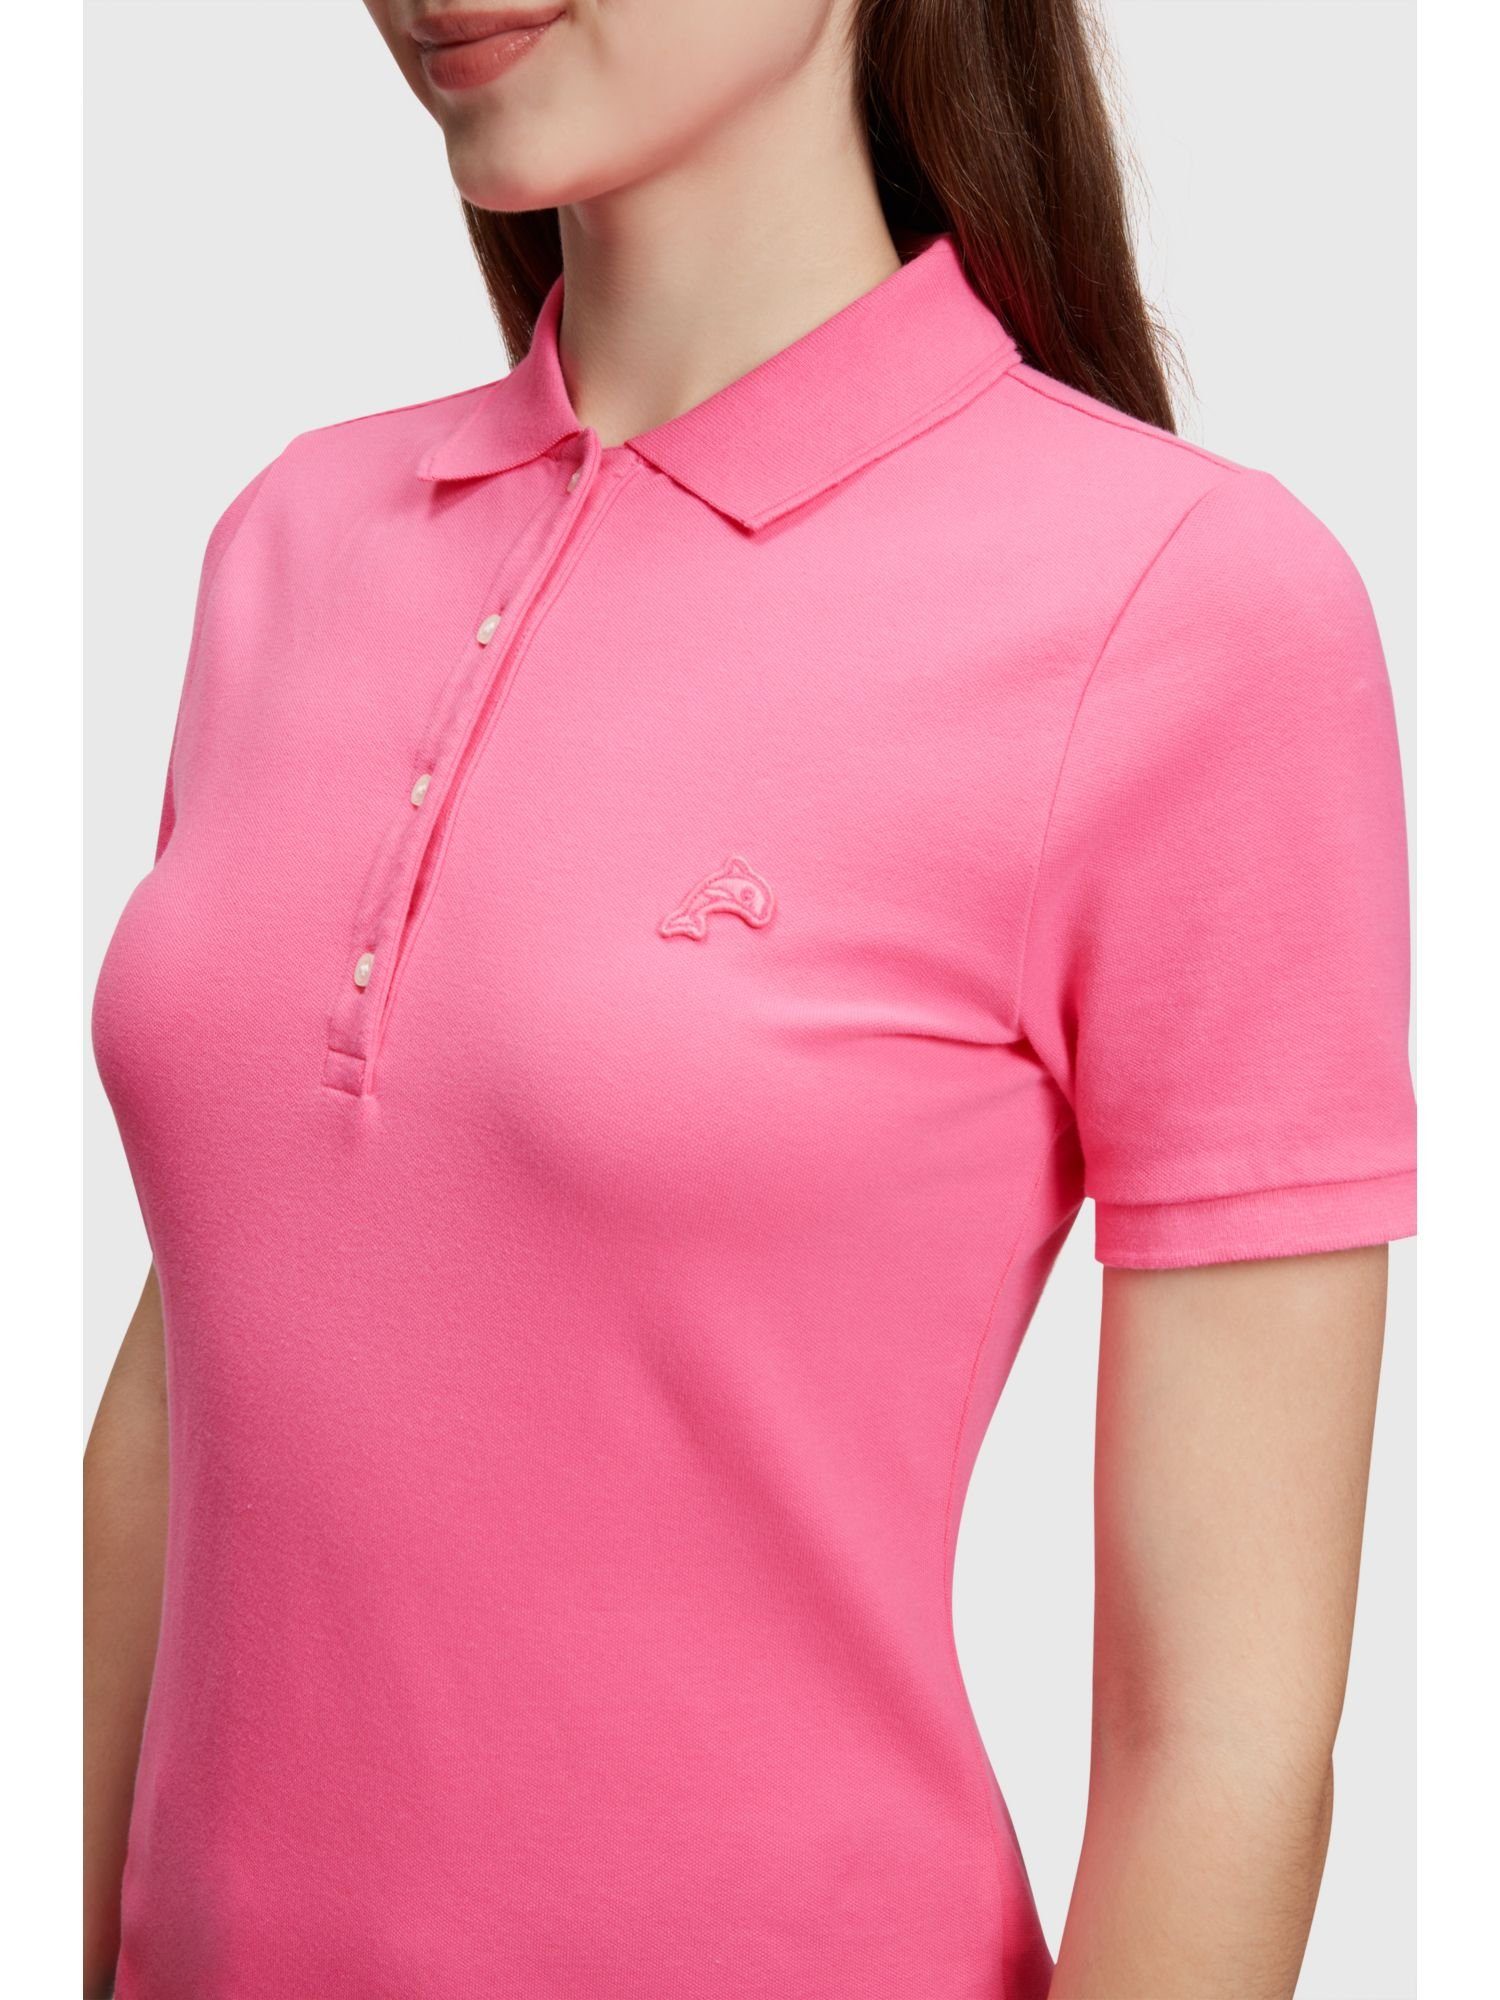 PINK Tennis-Poloshirt Poloshirt Dolphin-Batch mit Esprit Klassisches